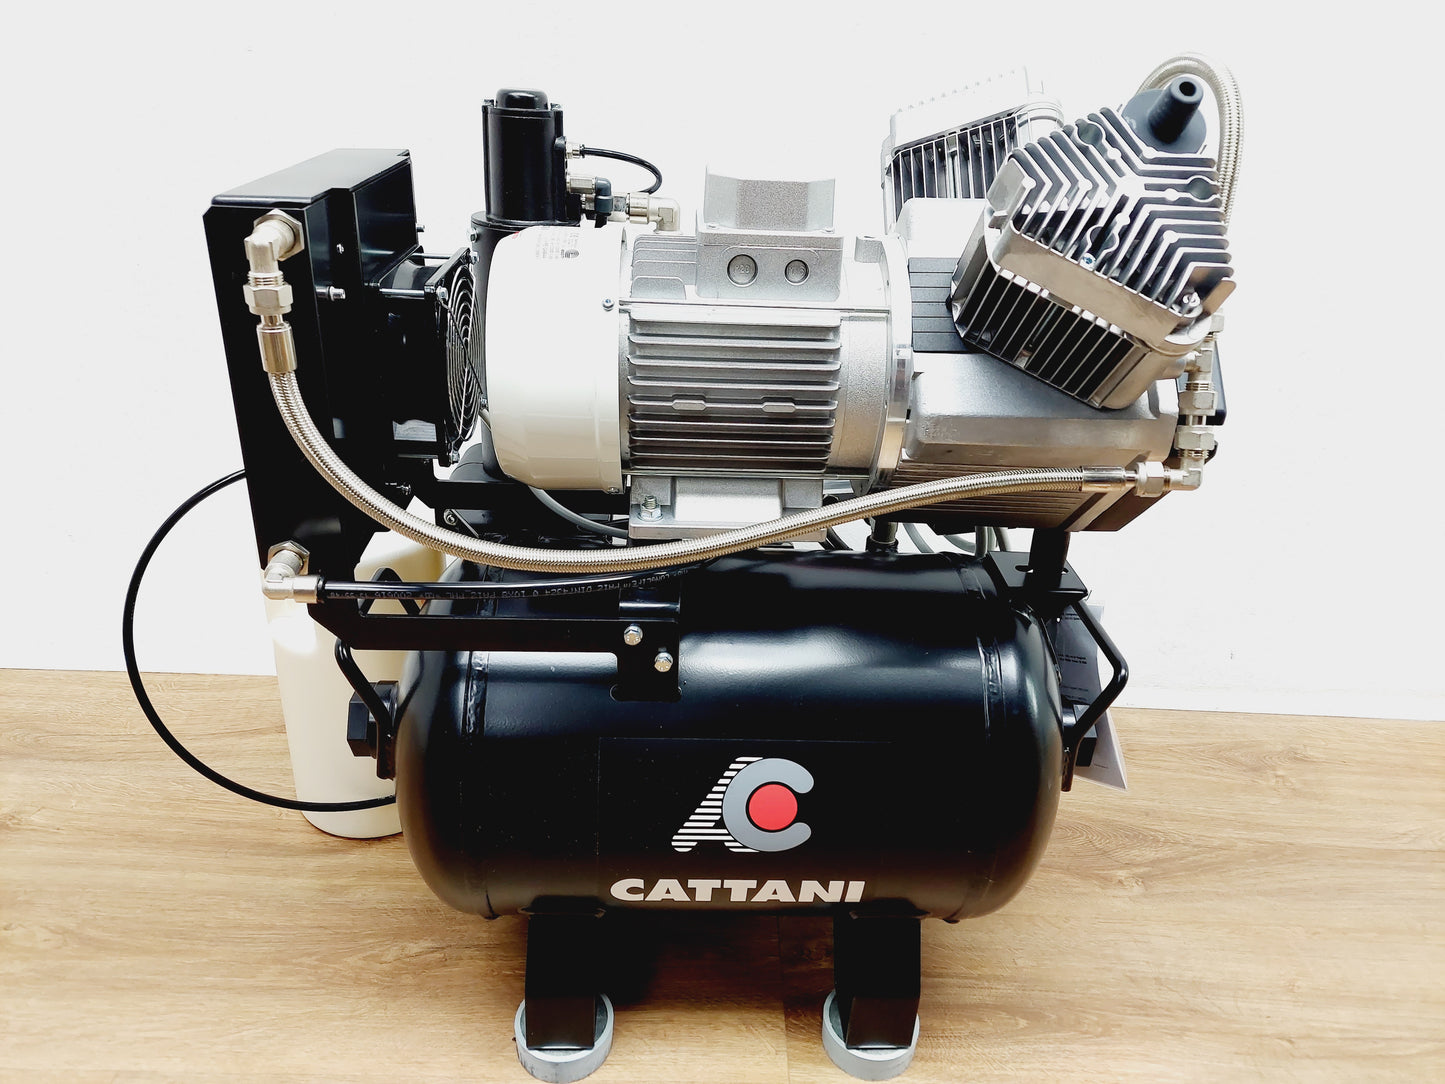 Kompressor Cattani AC 200. Für zwei-drei Dentalgeräte mit Lufttrockner und ölfrei